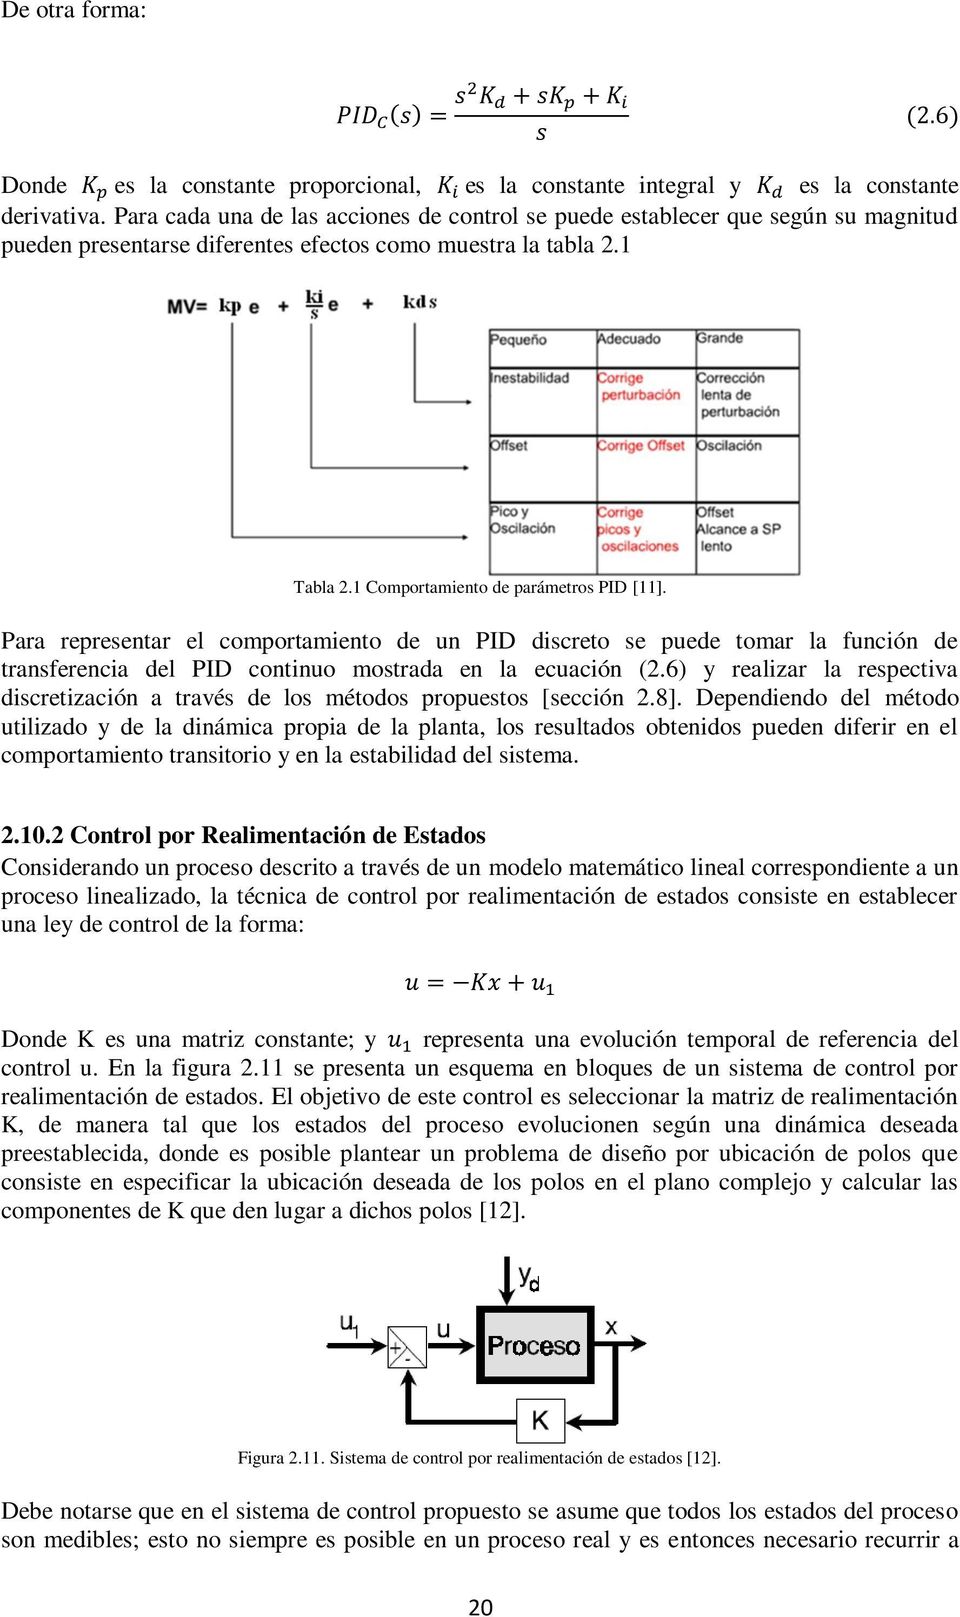 Para representar el comportamiento de un PID discreto se puede tomar la función de transferencia del PID continuo mostrada en la ecuación (2.